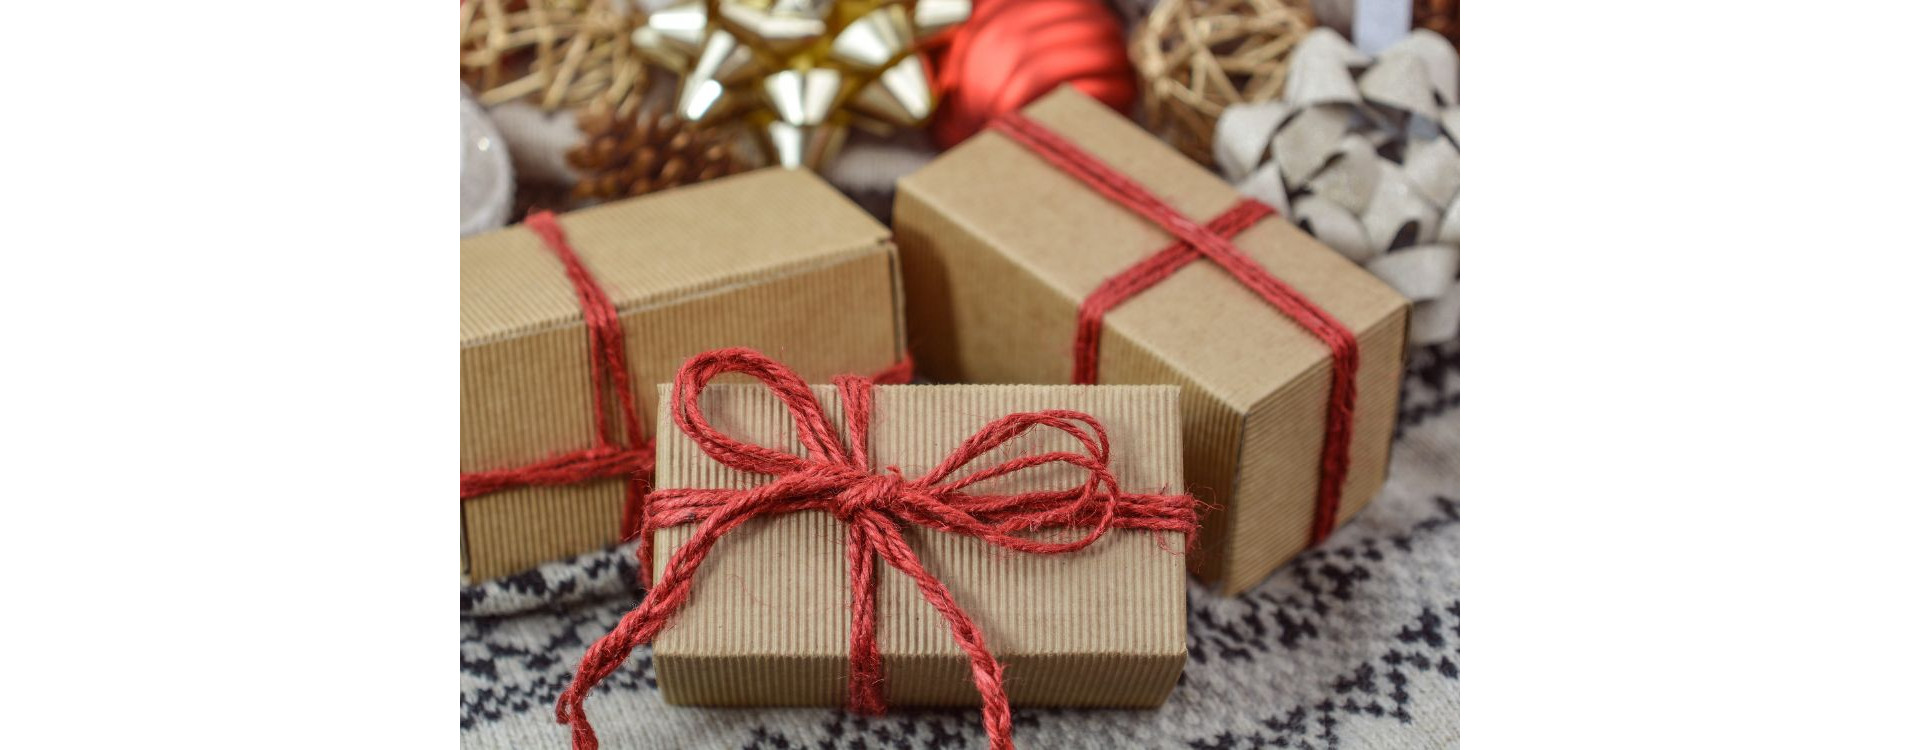 Trouver le cadeau parfait sans casser sa tirelire : Idées cadeaux